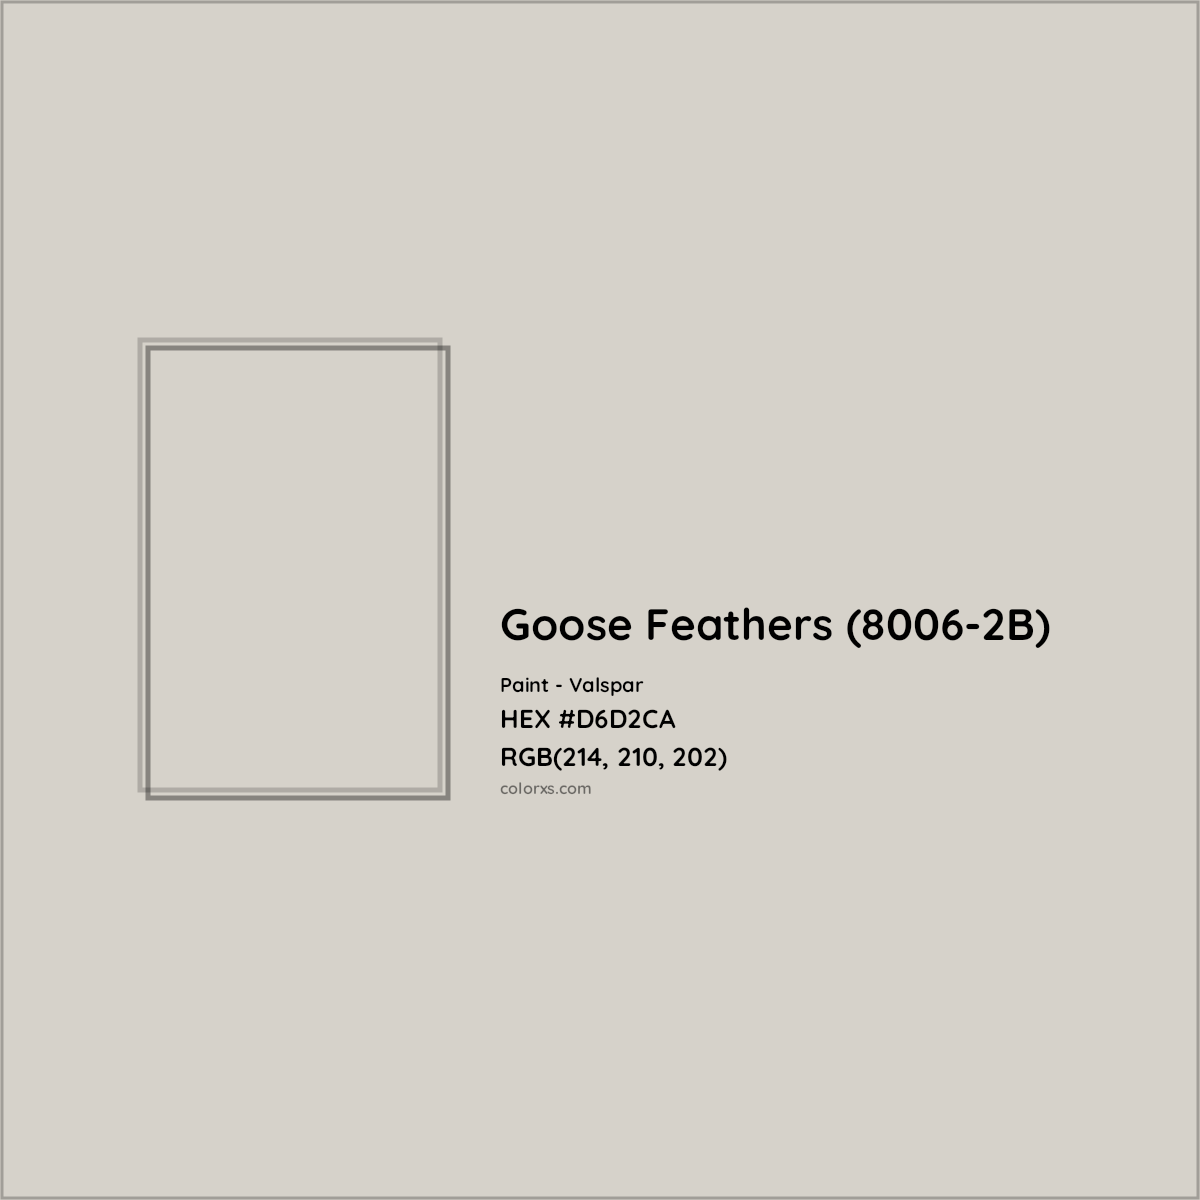 HEX #D6D2CA Goose Feathers (8006-2B) Paint Valspar - Color Code